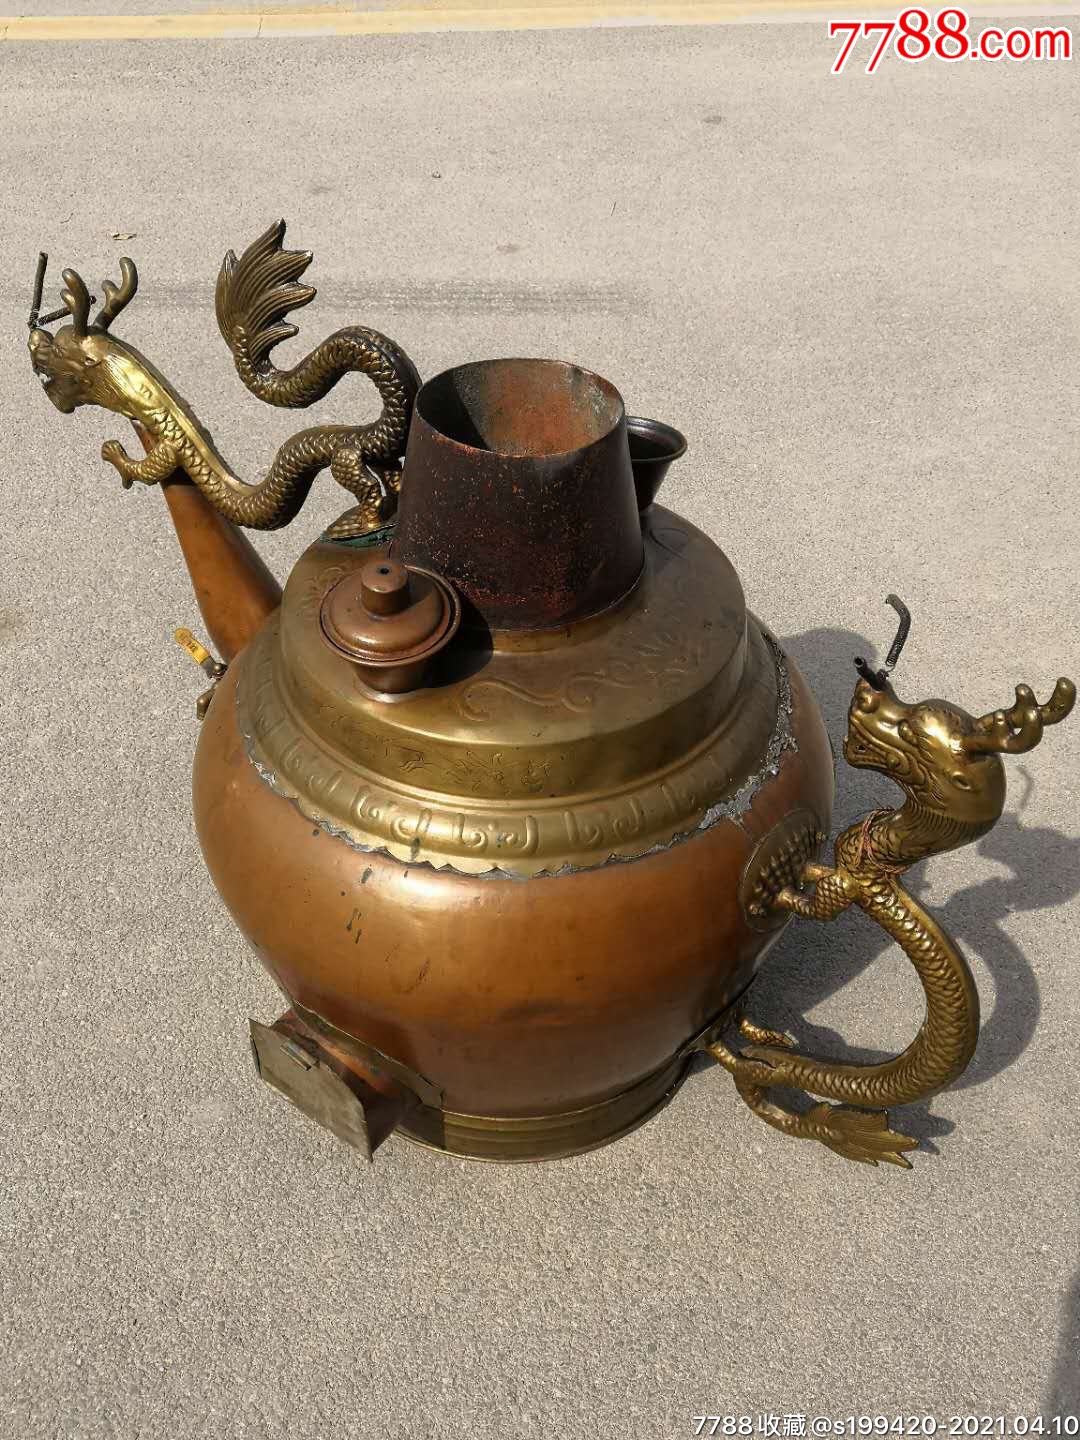 民国紫铜龙头大铜壶,重19斤,包浆一流,造型精美,非常难得,包老保真